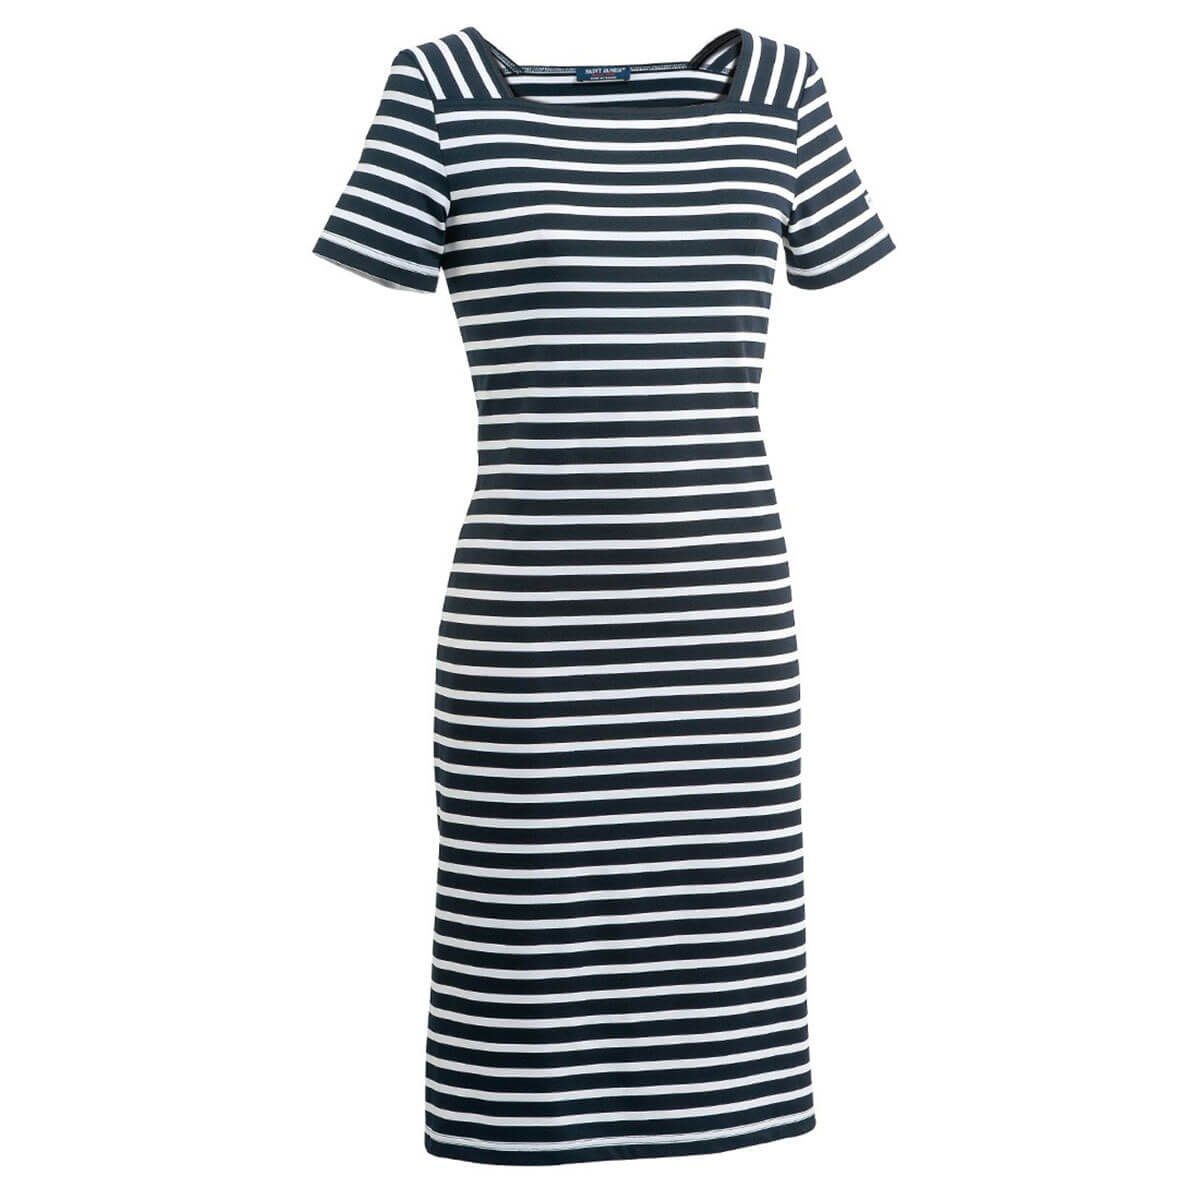 Saint James Shirtkleid 5527 Damen Kleid Tolede Blau-Weiß(6T) Ausschnitt und eckigem Streifen mit II